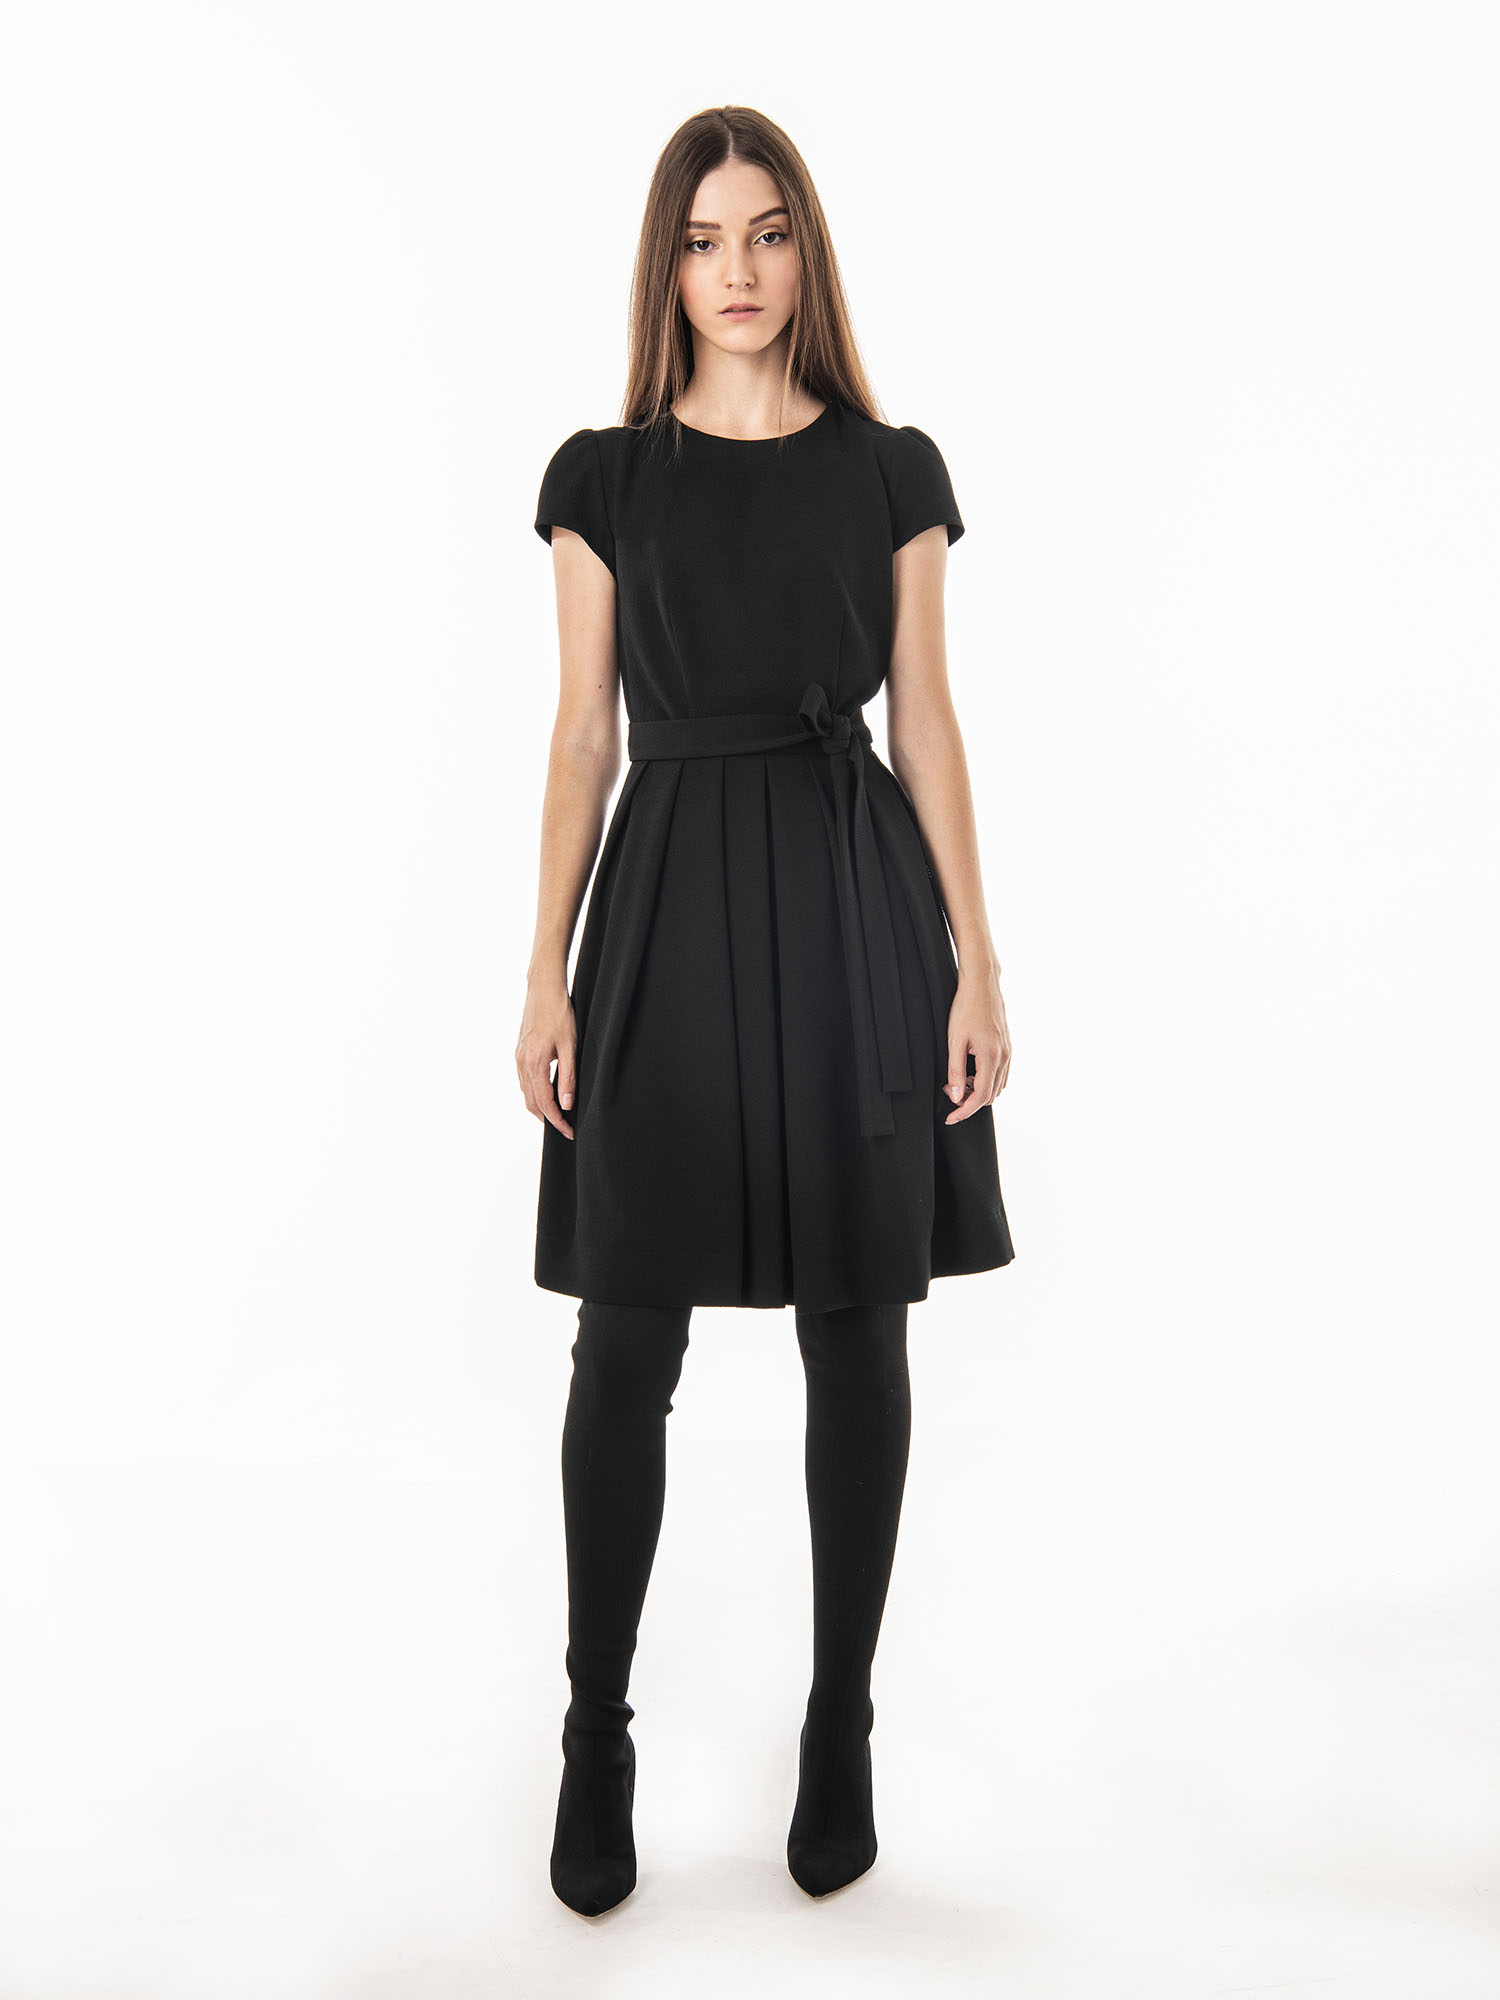 Black dress pleated skirt full • Sassa Björg